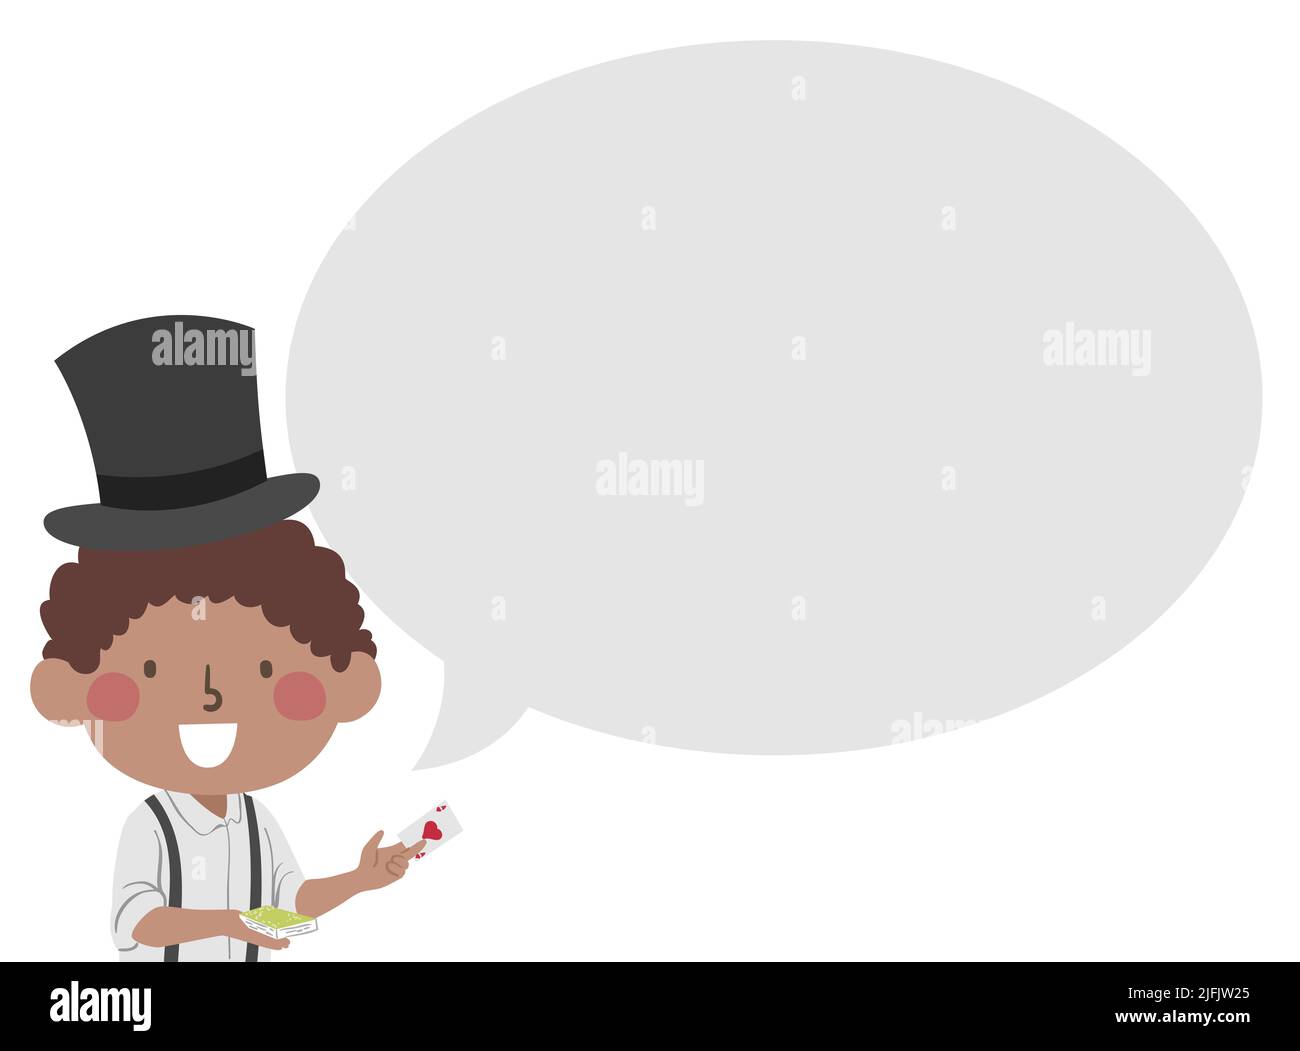 Ilustración de un niño afroamericano con sombrero de tapa, con tarjetas mágicas con burbuja de habla Foto de stock